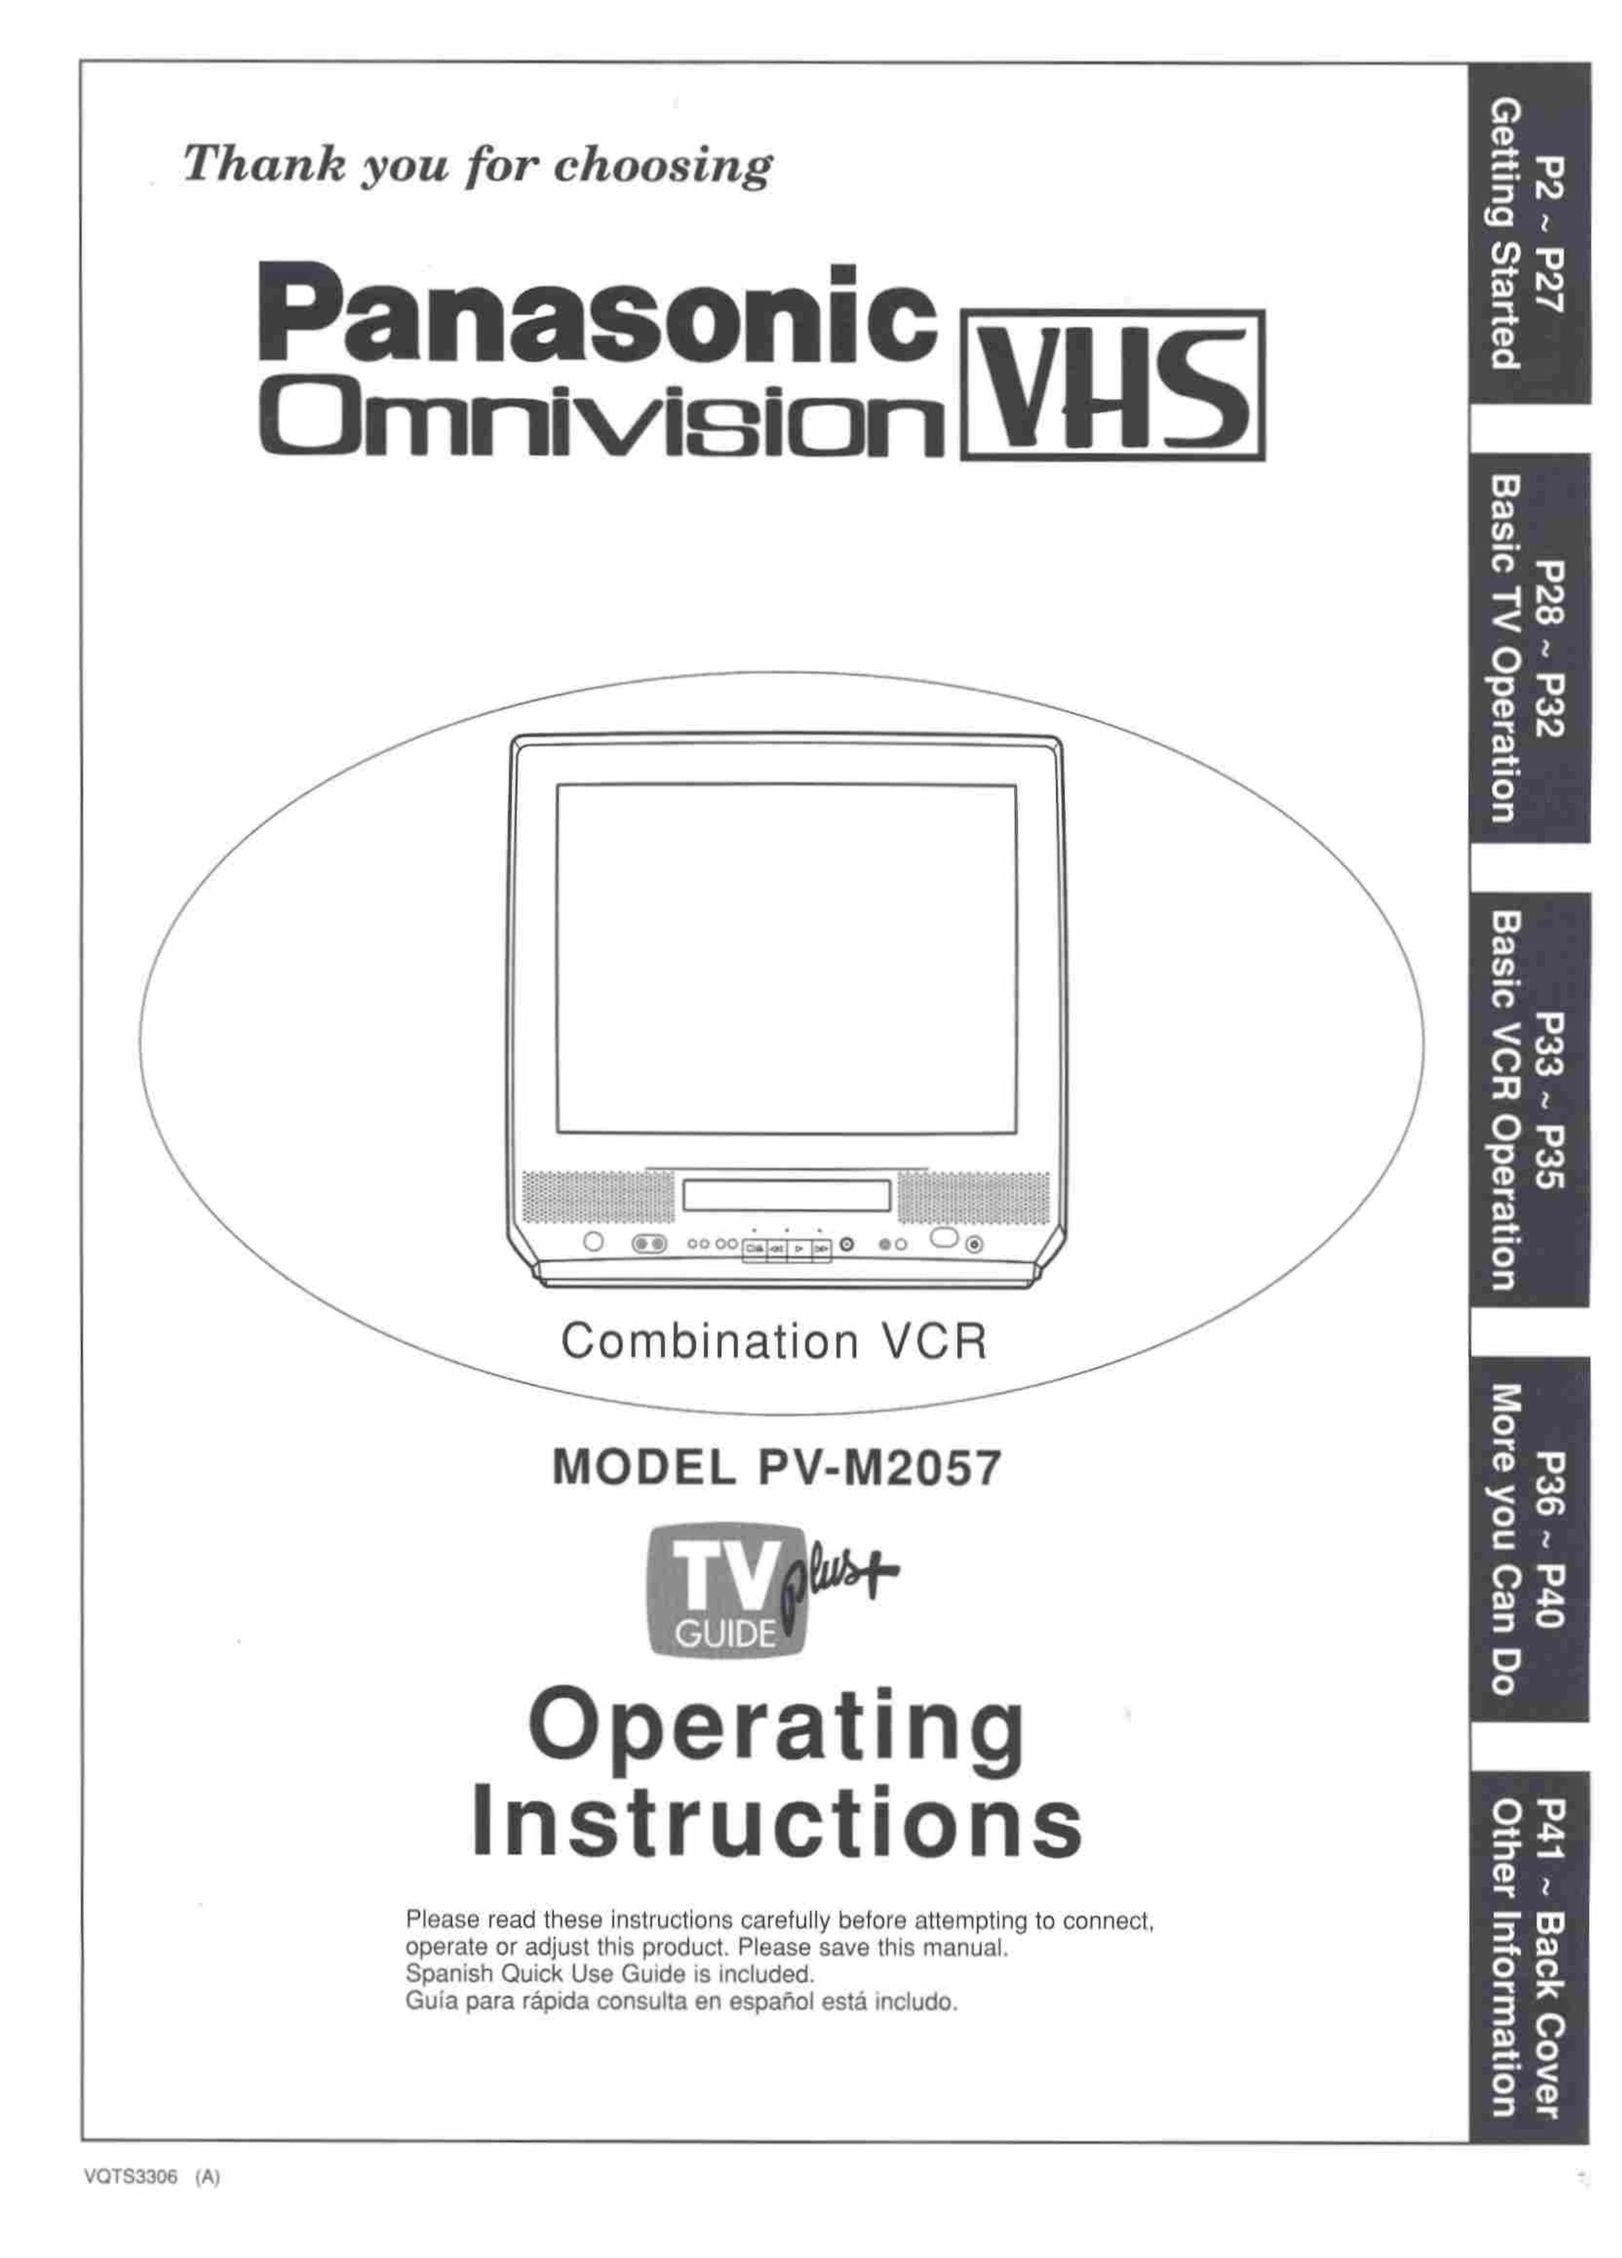 Panasonic PV-M2057 TV VCR Combo User Manual